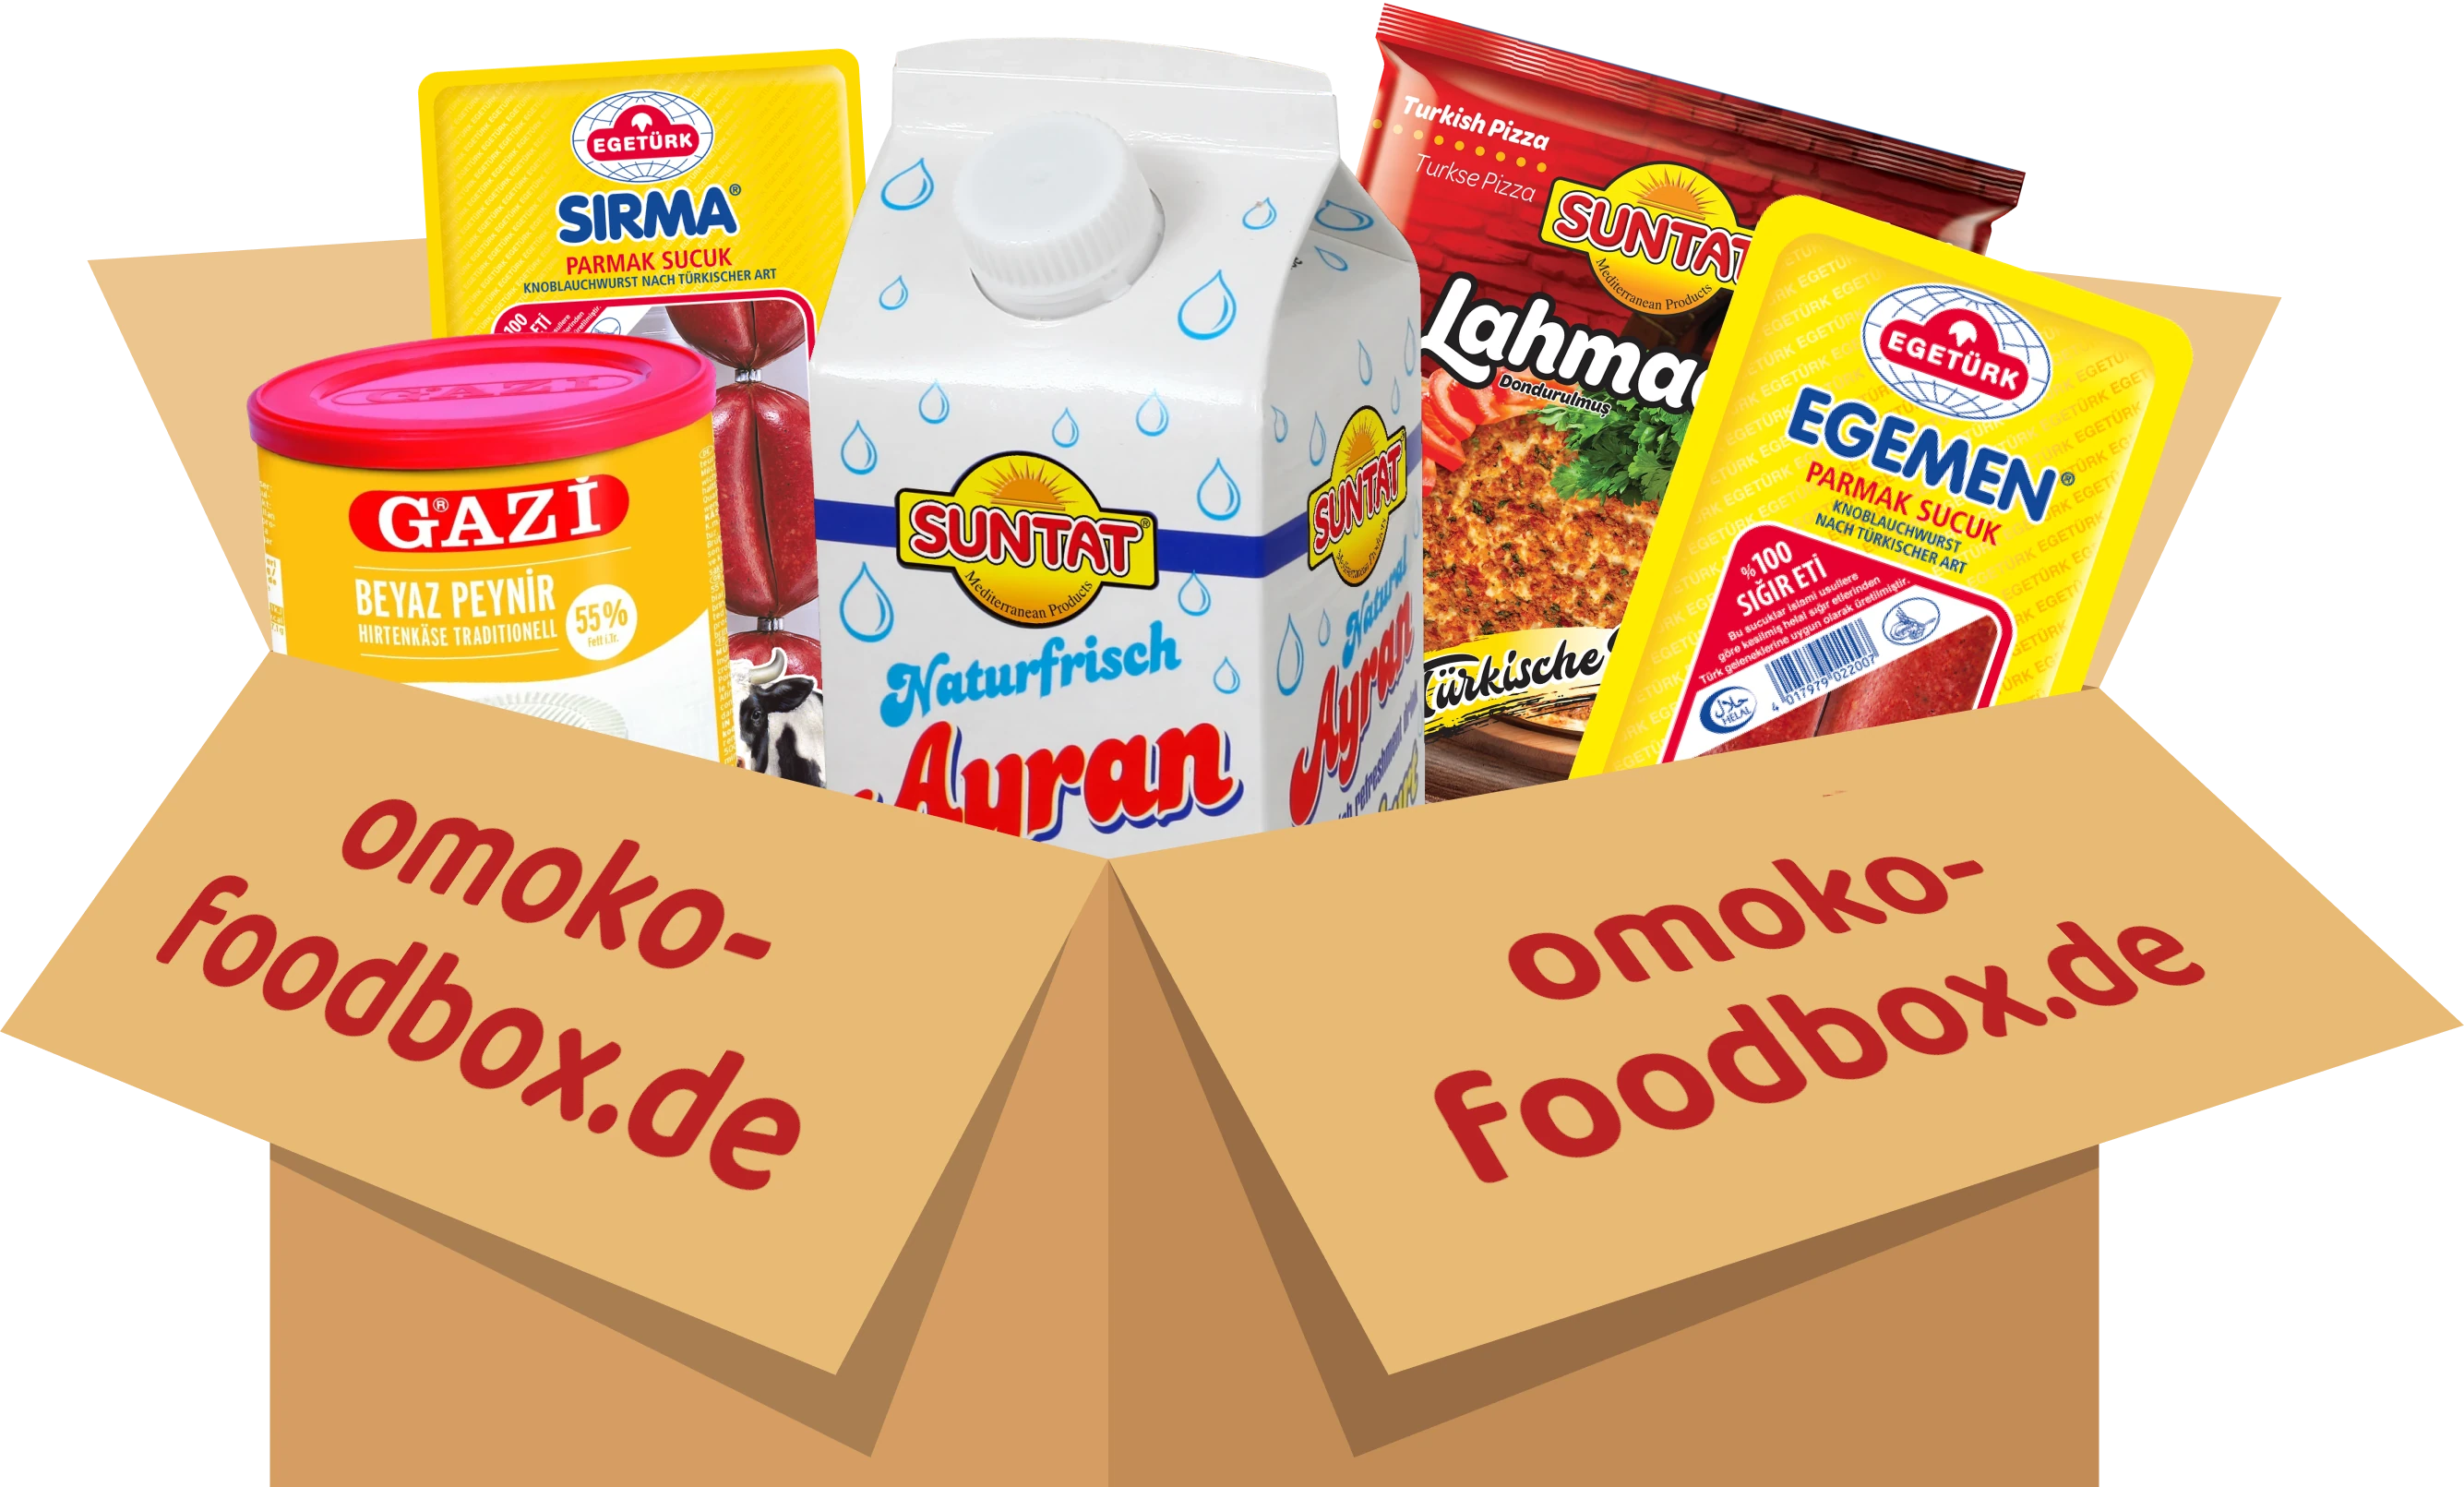 OMOKO Foodbox